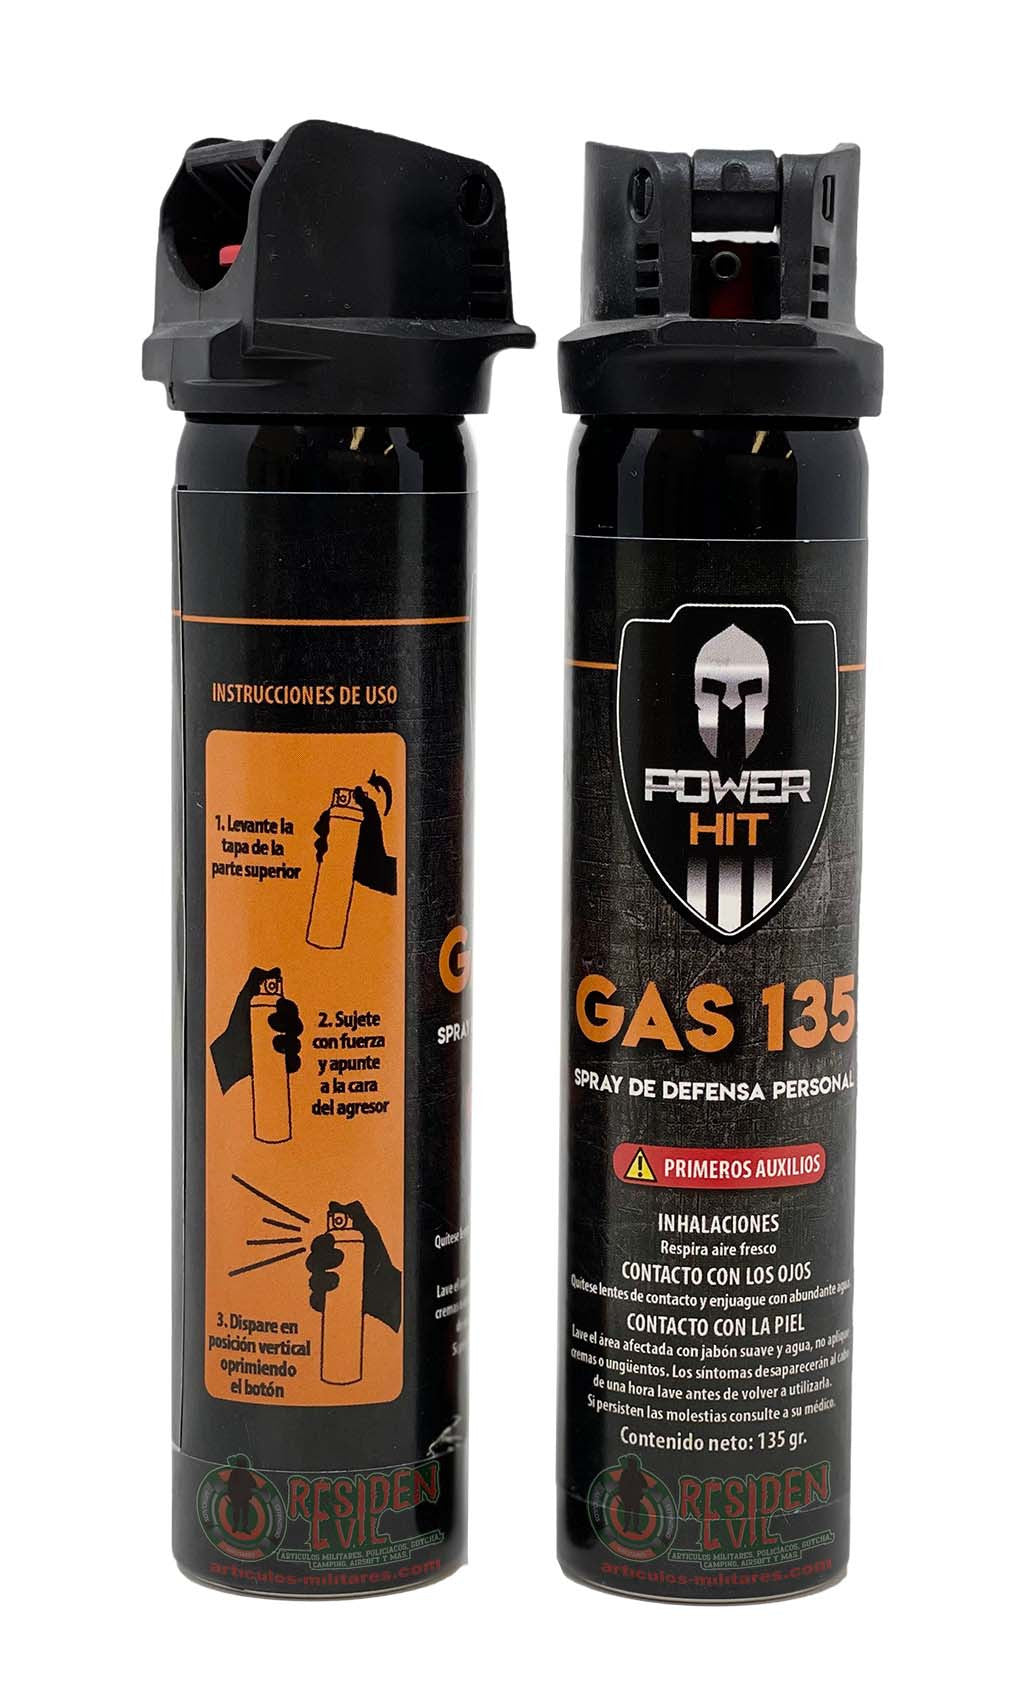 Gas Pimienta Lacrimogeno 135 gr Power Hit